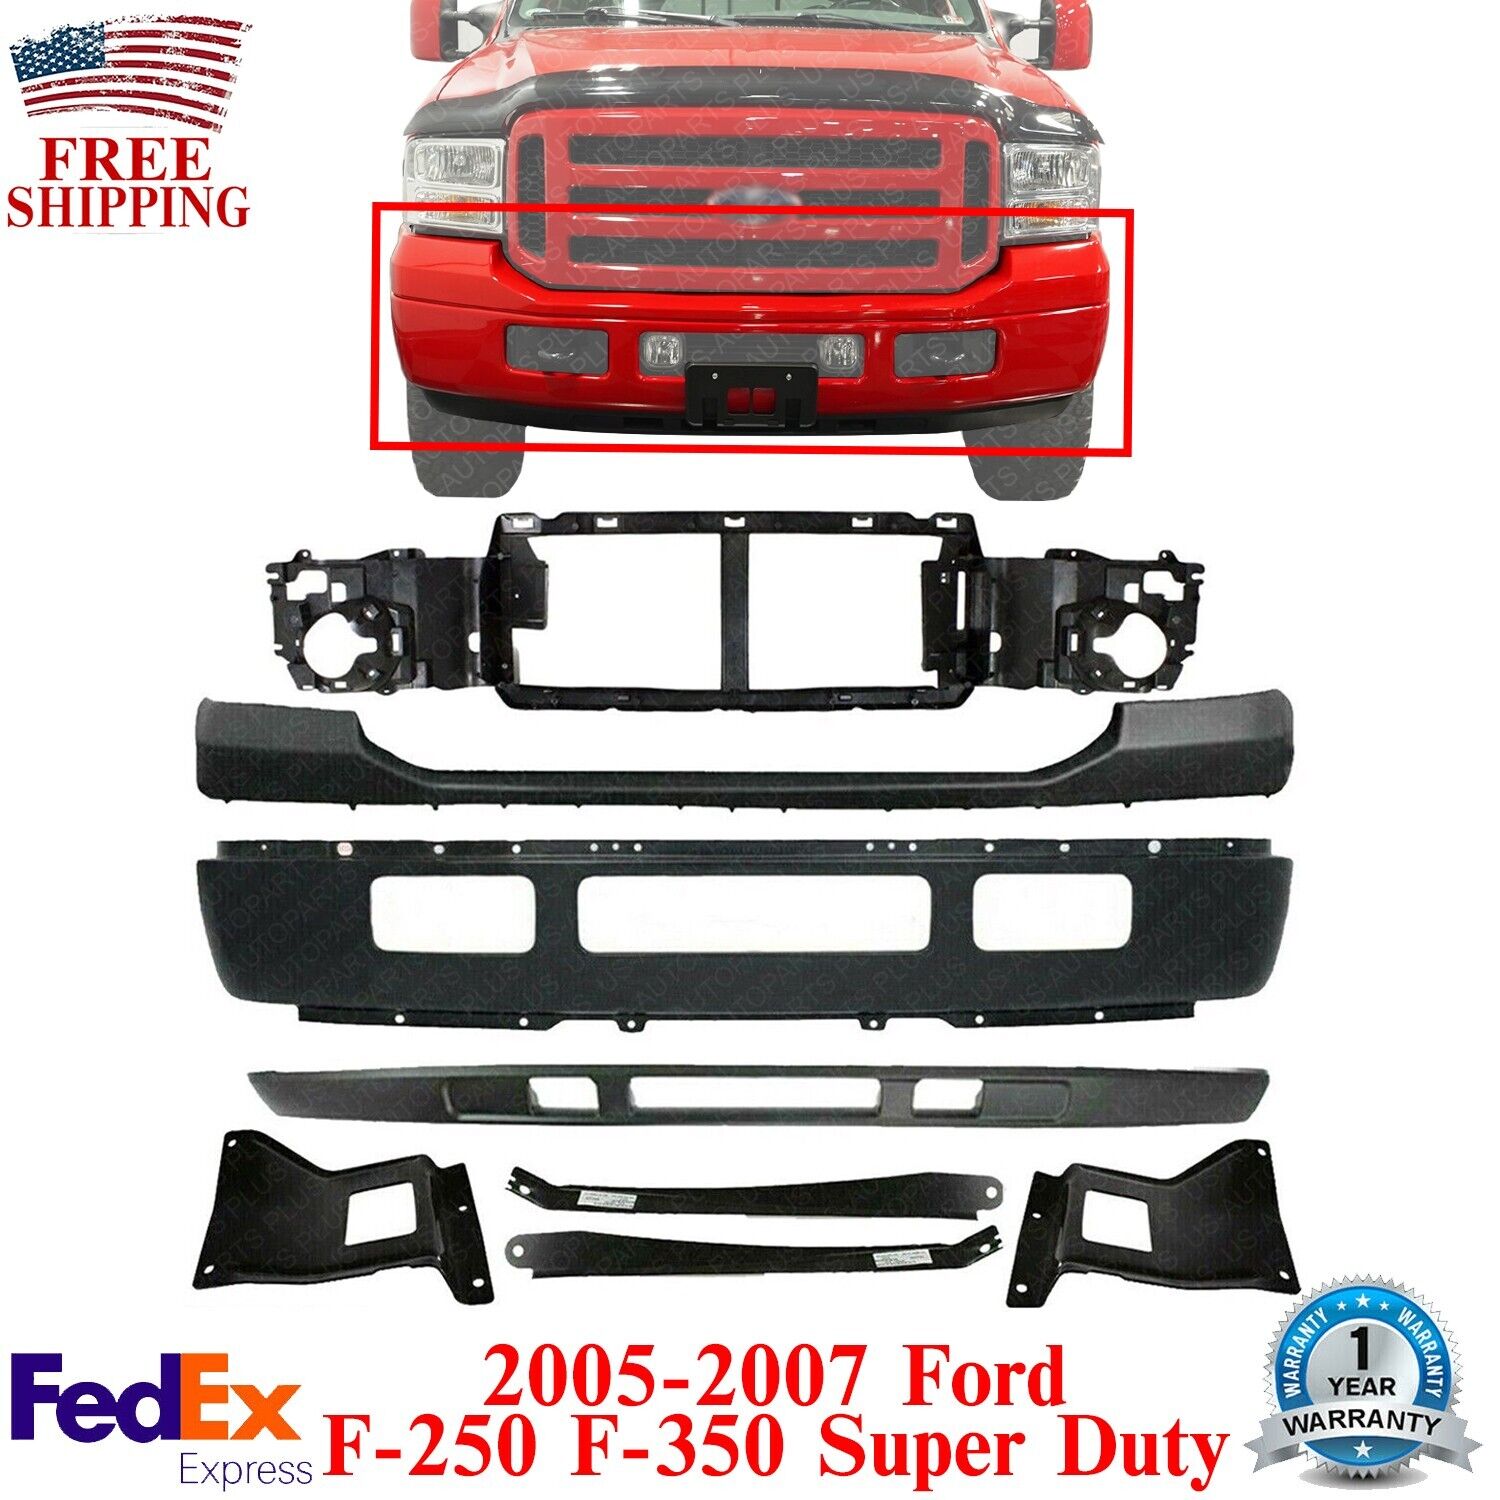 Front Bumper Primed Kit + Header Panel For 2005-2007 Ford F-250 F-350 Super Duty